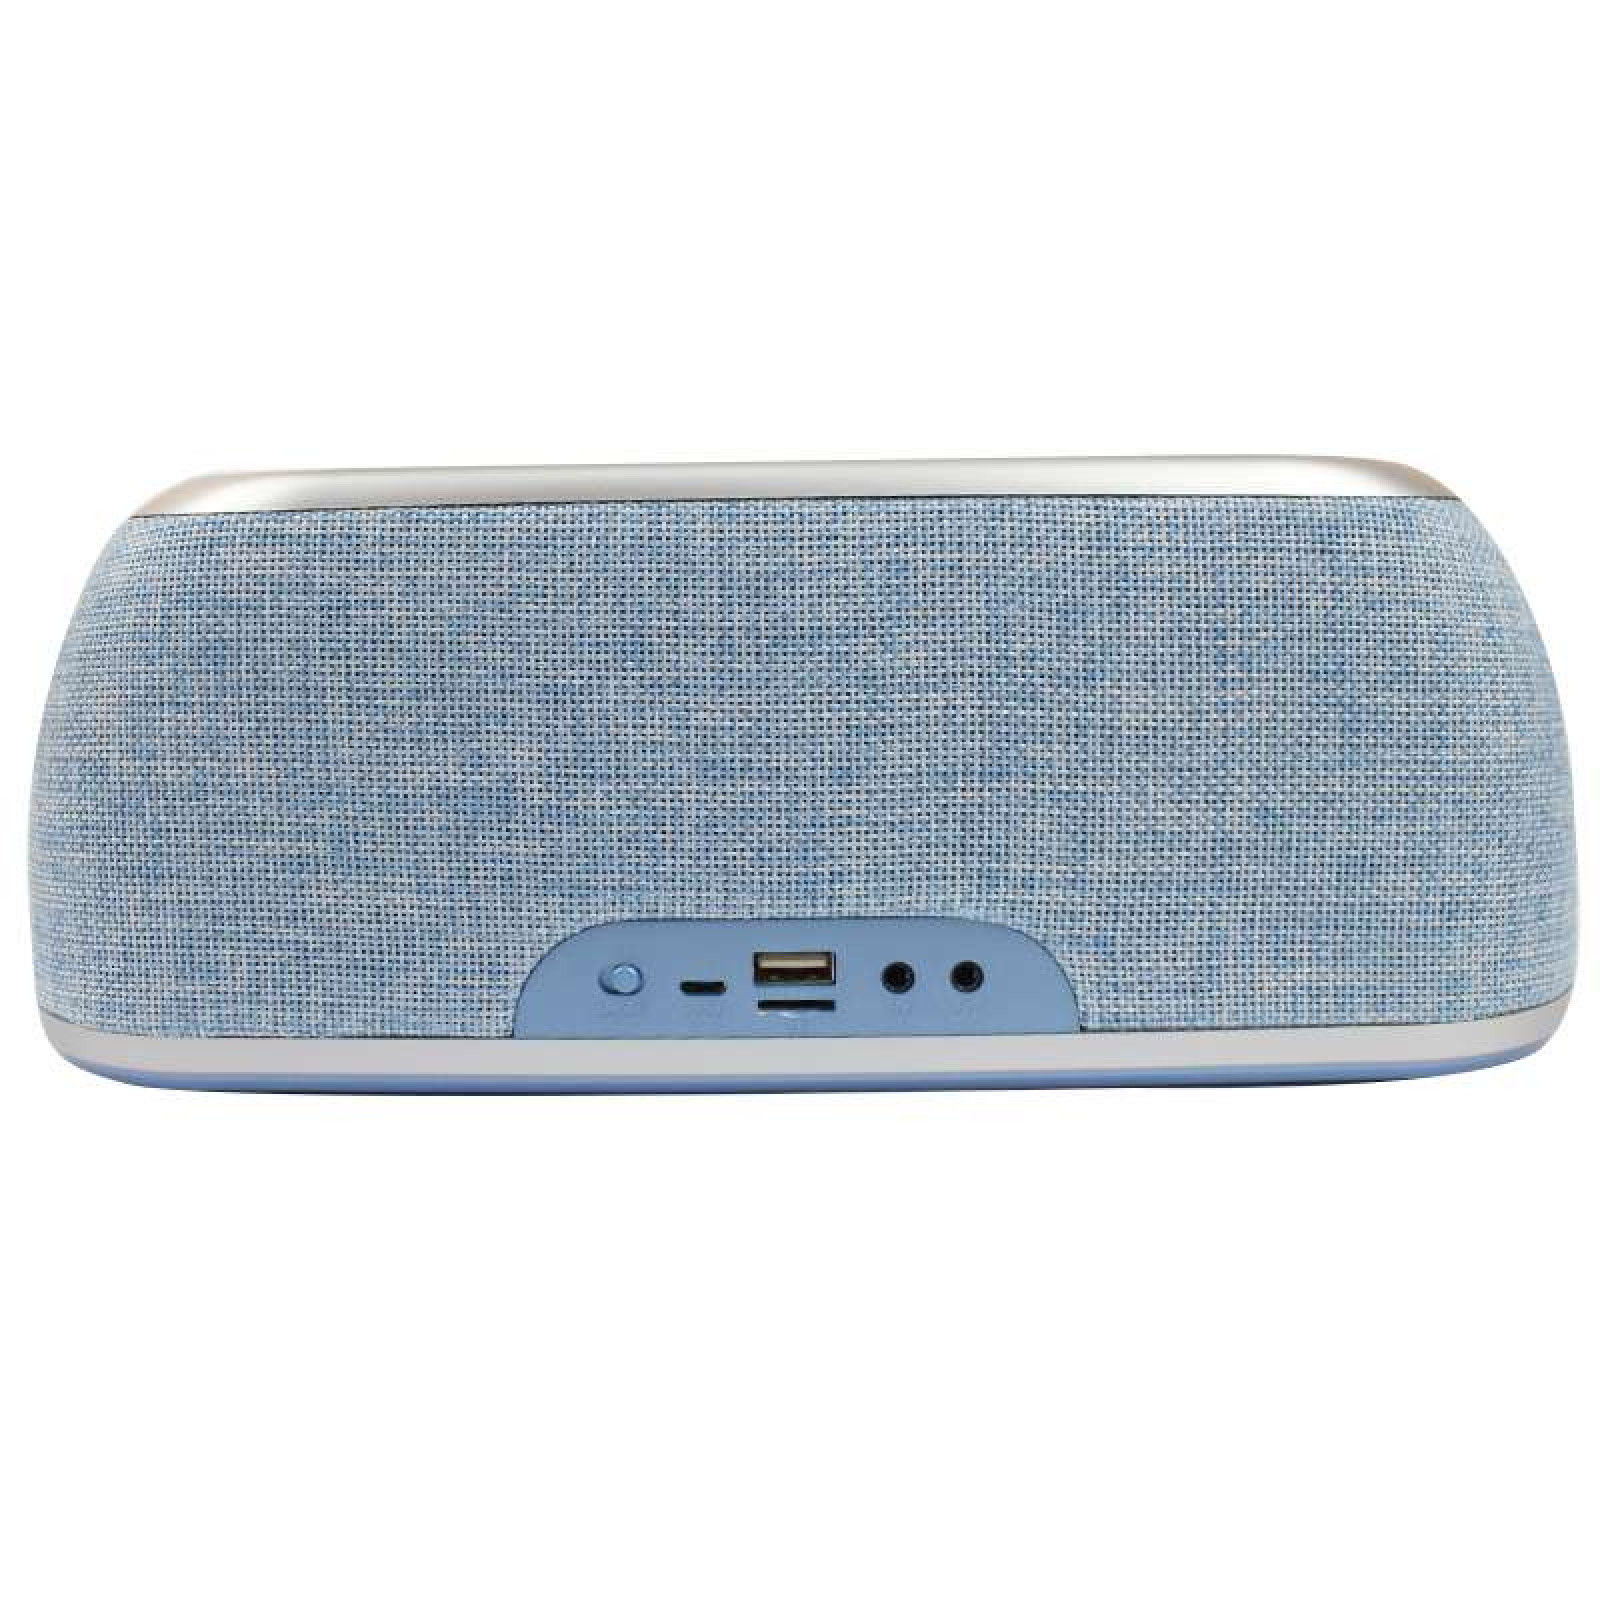 Портативная акустическая Bluetooth колонка Hopestar A4 голубая 140047